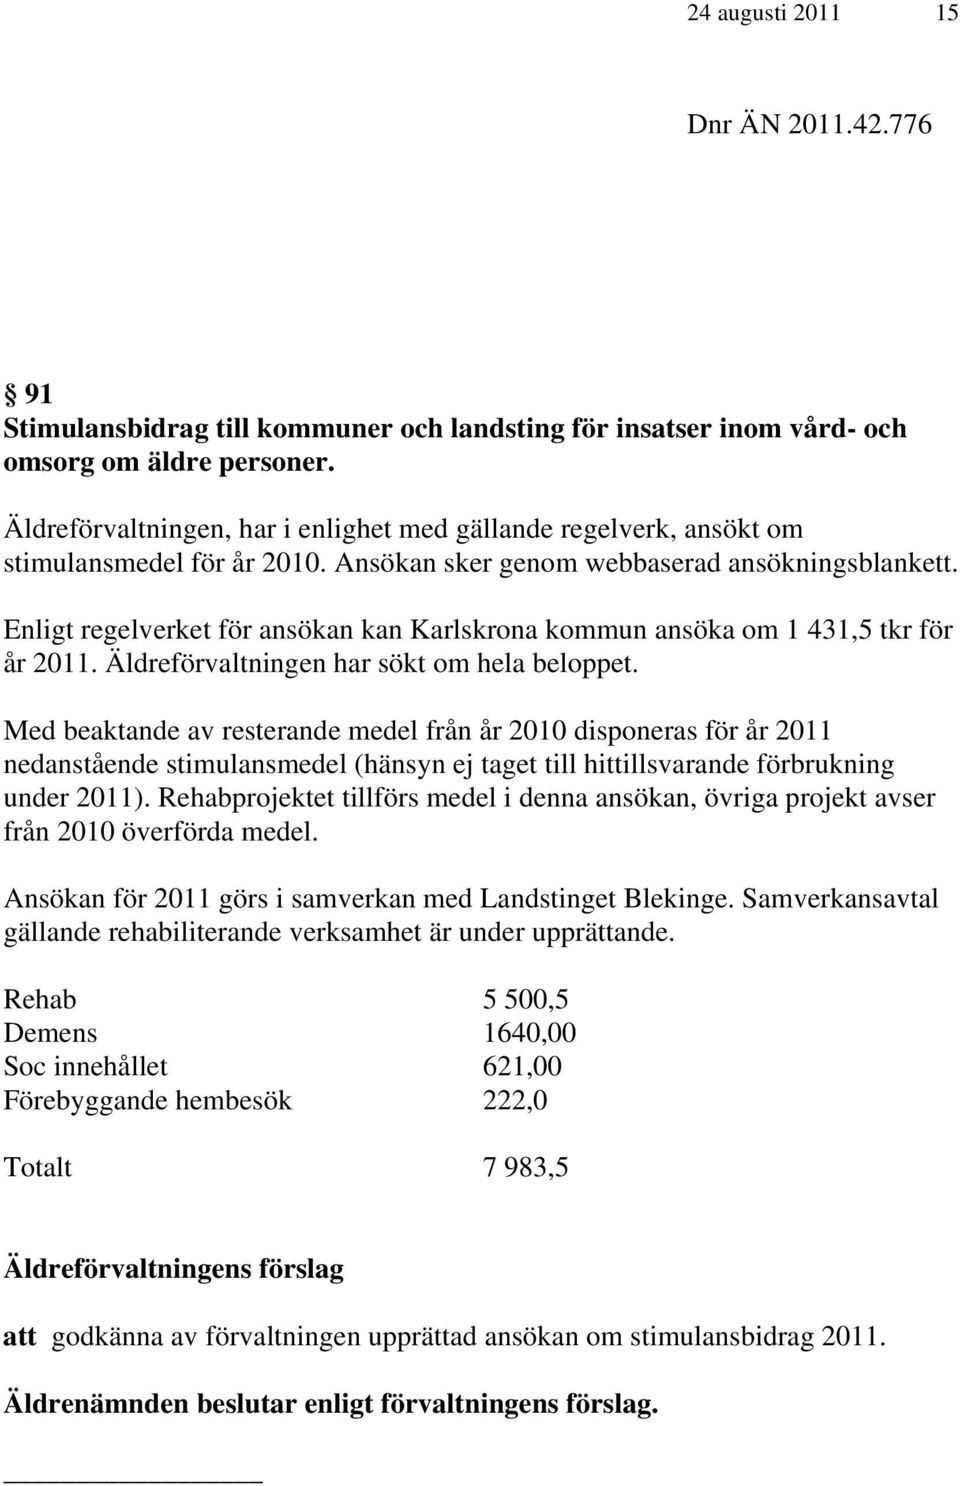 Enligt regelverket för ansökan kan Karlskrona kommun ansöka om 1 431,5 tkr för år 2011. Äldreförvaltningen har sökt om hela beloppet.